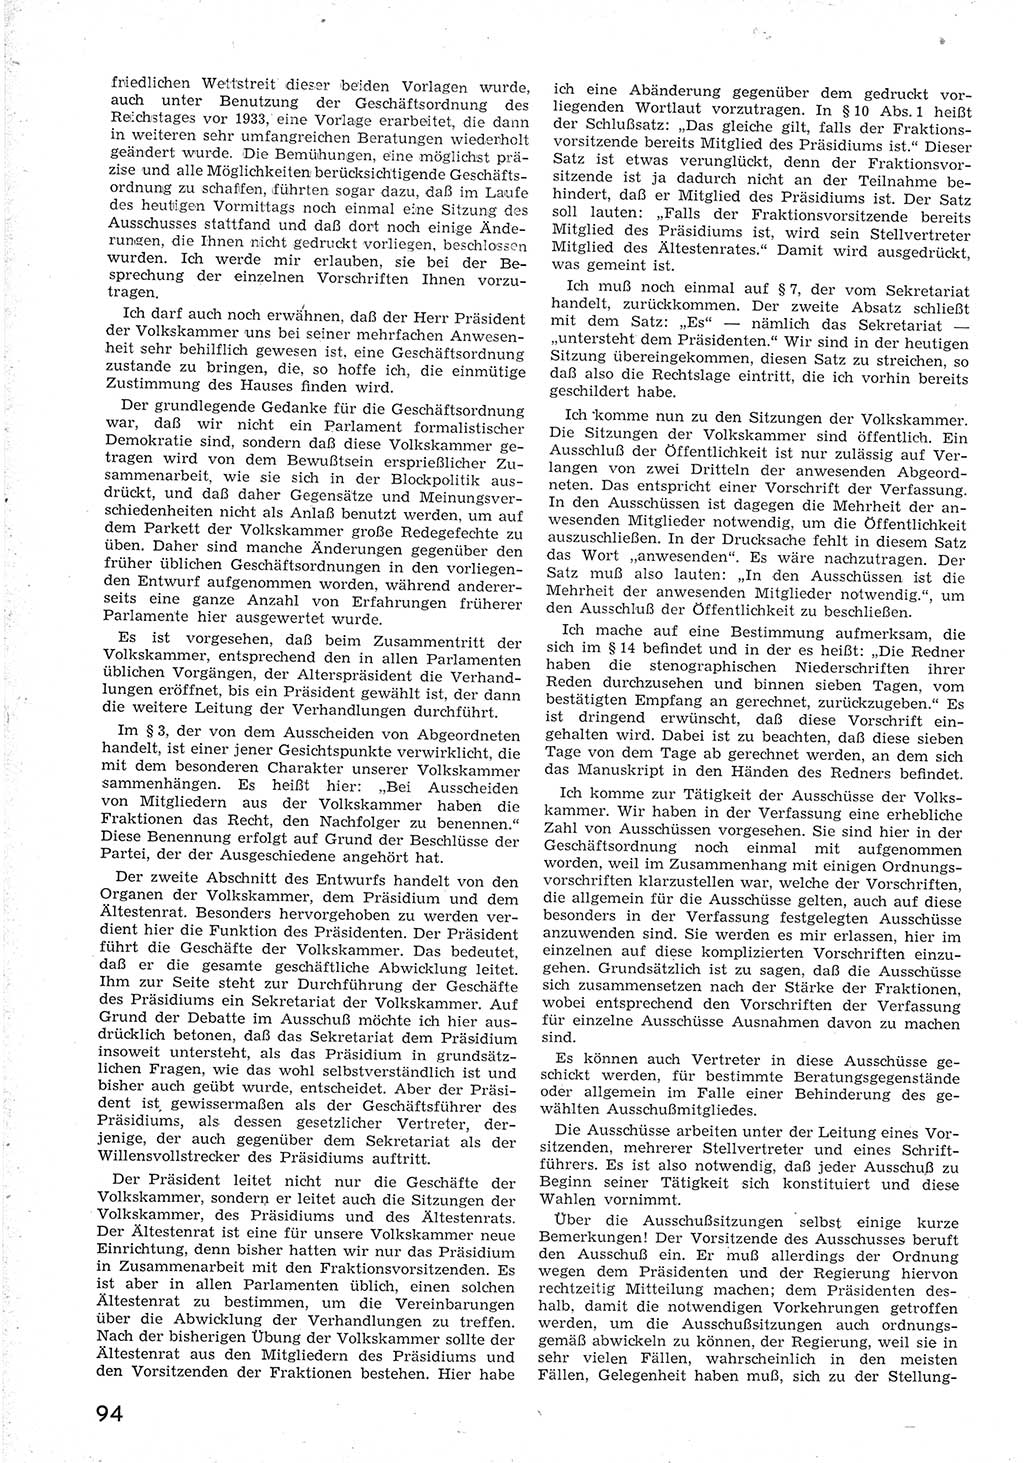 Provisorische Volkskammer (VK) der Deutschen Demokratischen Republik (DDR) 1949-1950, Dokument 106 (Prov. VK DDR 1949-1950, Dok. 106)